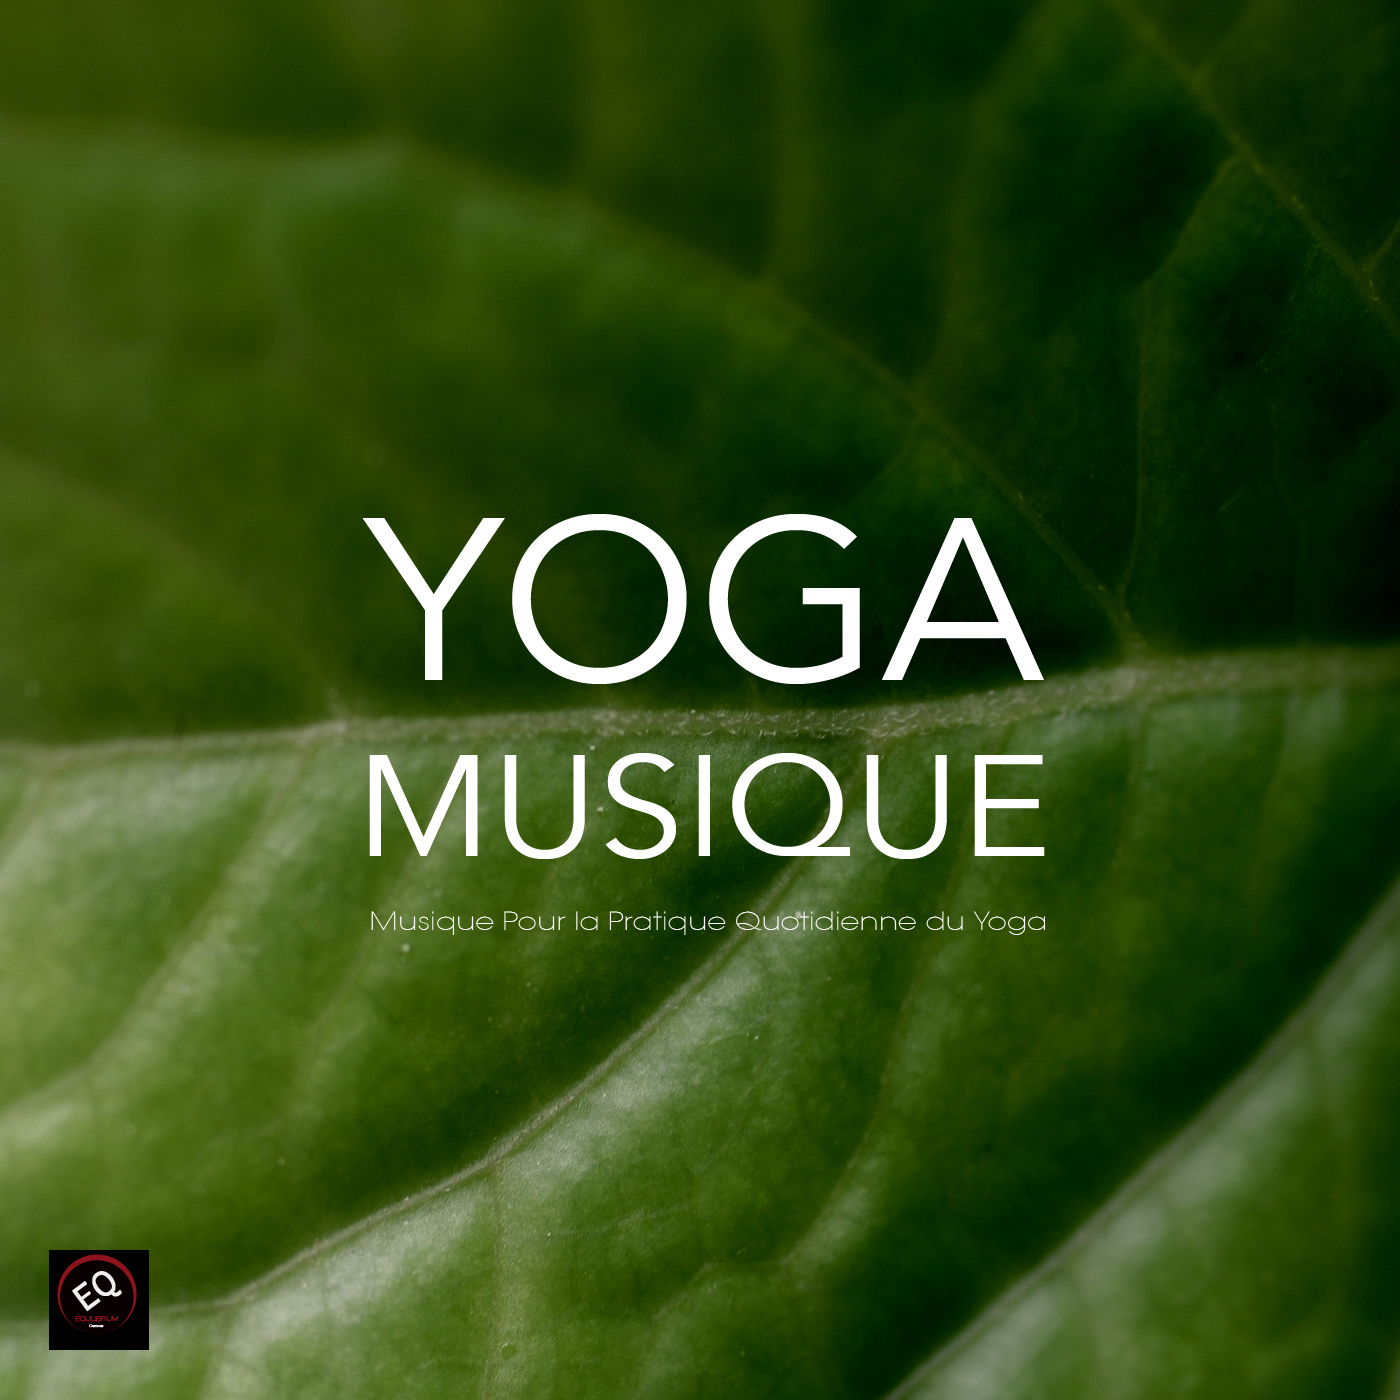 Yoga Musique - Musique pour la Pratique Quotidienne du Yoga